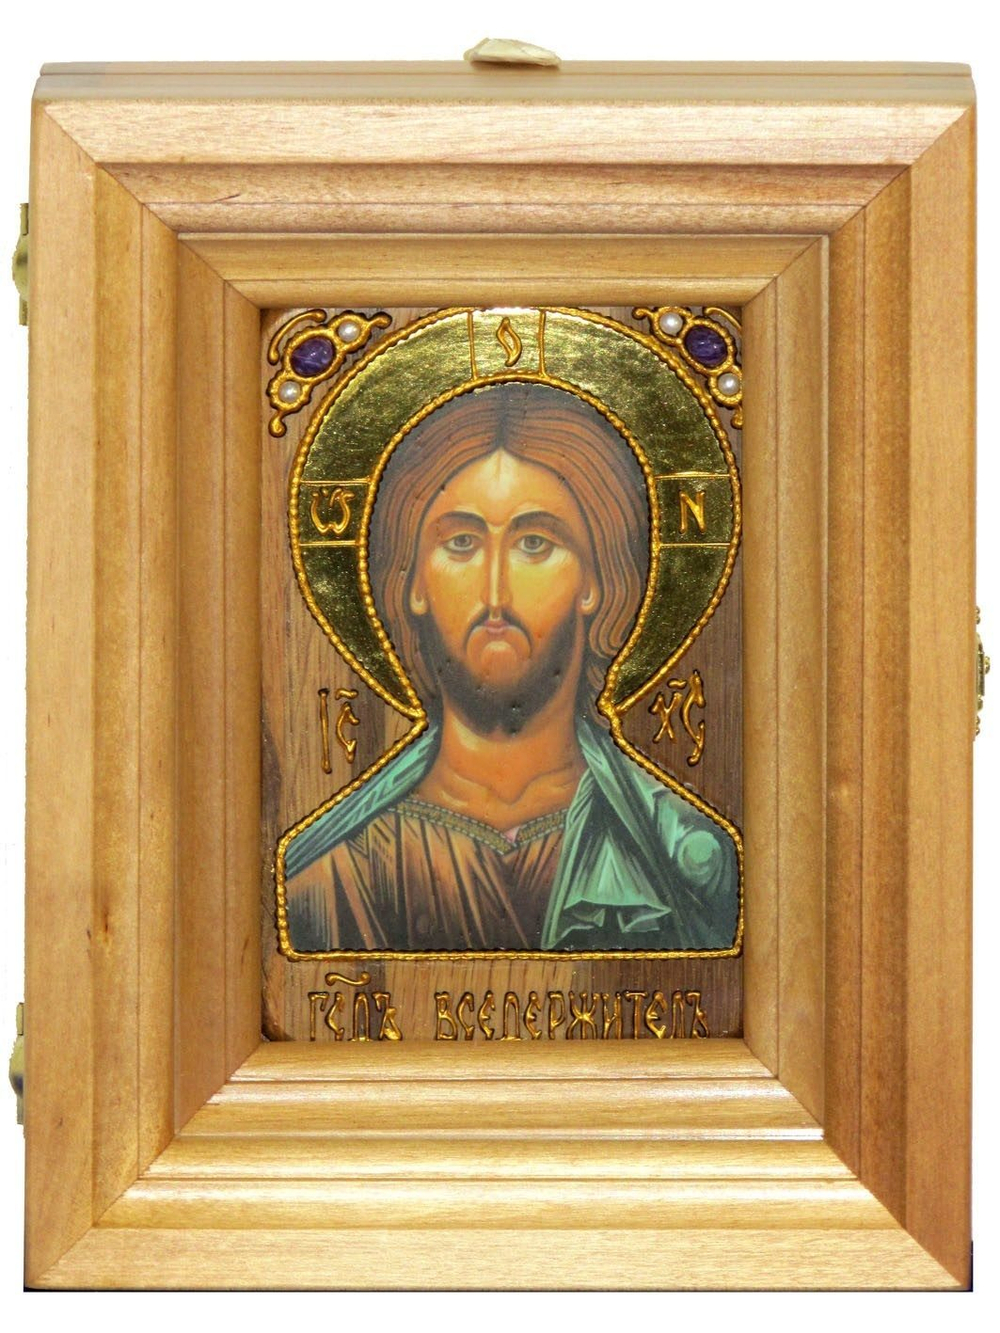 Подарочная икона Господь Вседержитель с нимбом из сусального золота 15х10см в березовом киоте